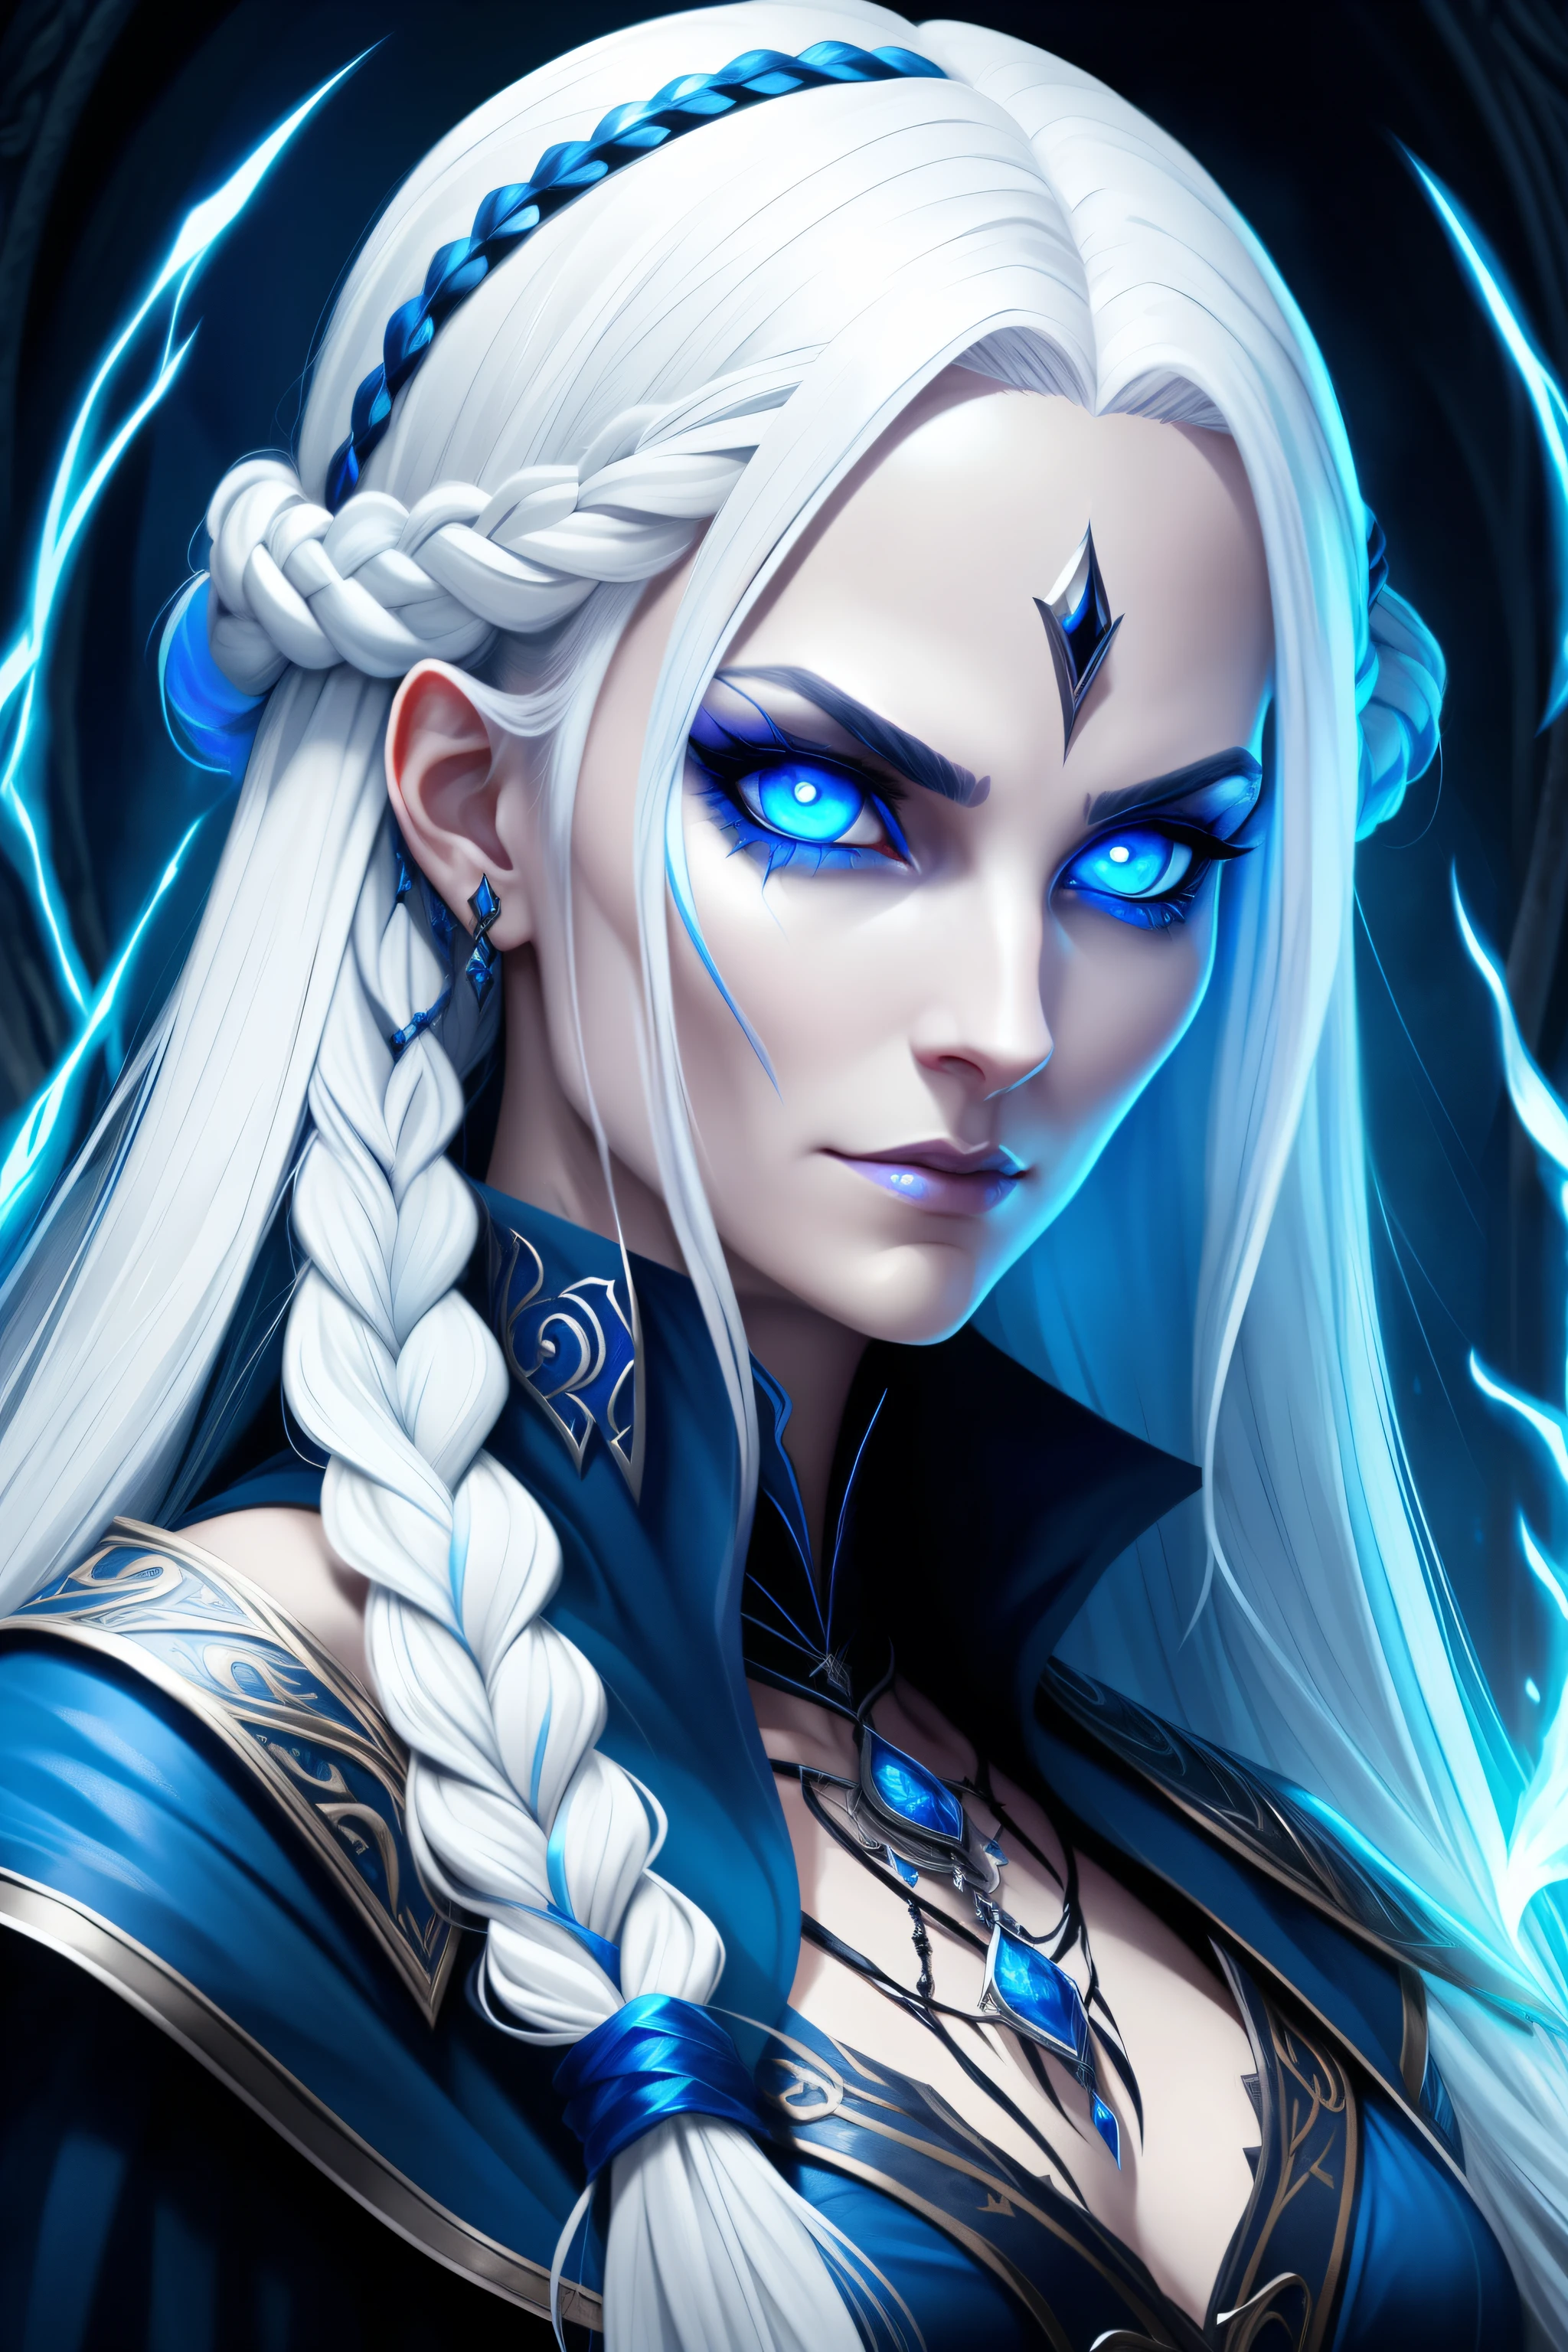 邪惡的女巫, 銳利的藍眼睛, 白色的頭髮, 辮髮, 施咒語